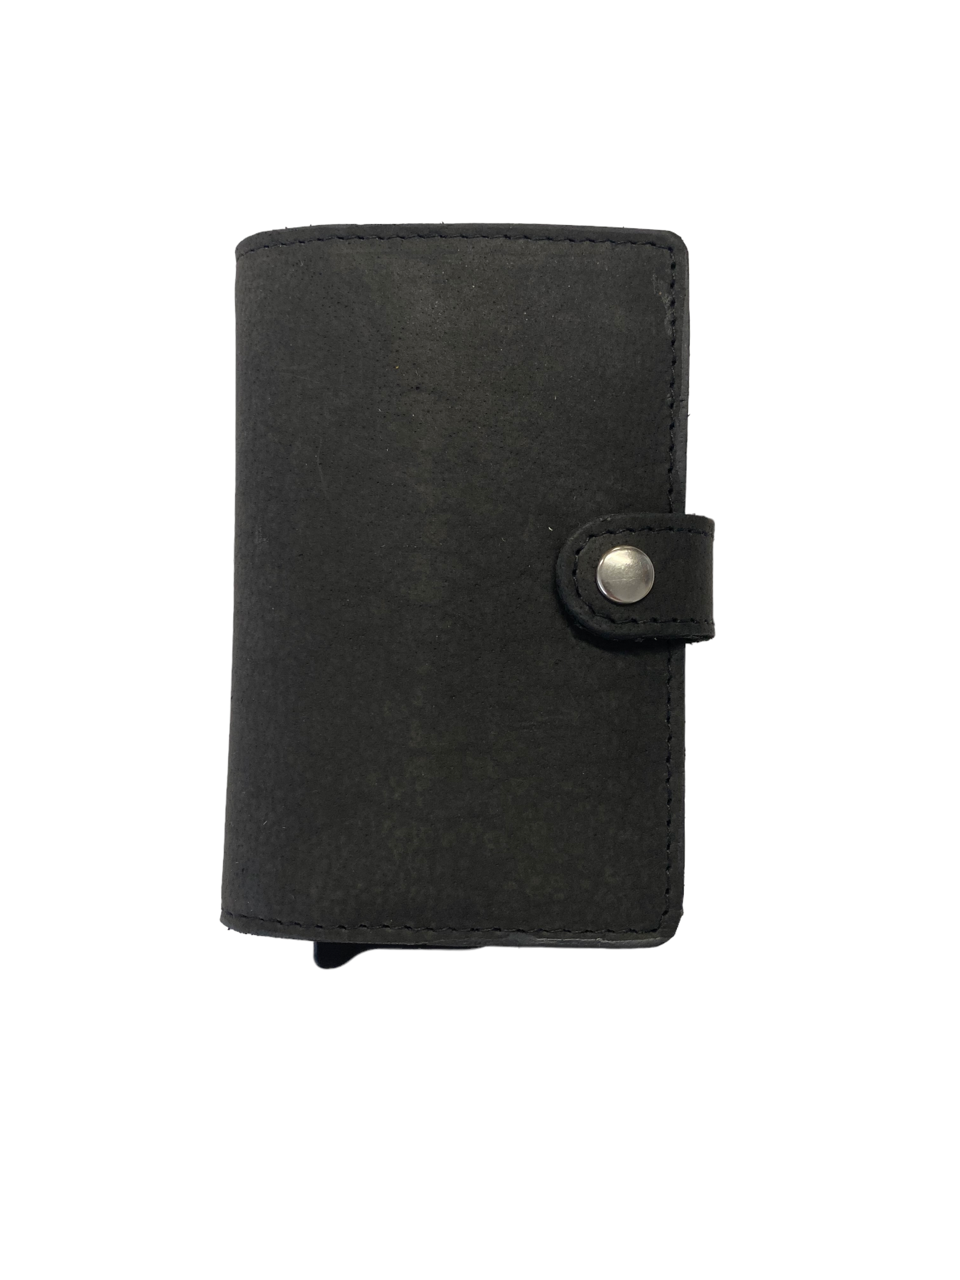 Oran - DL-02 Leather Spring load 8 card wallet - Black-1